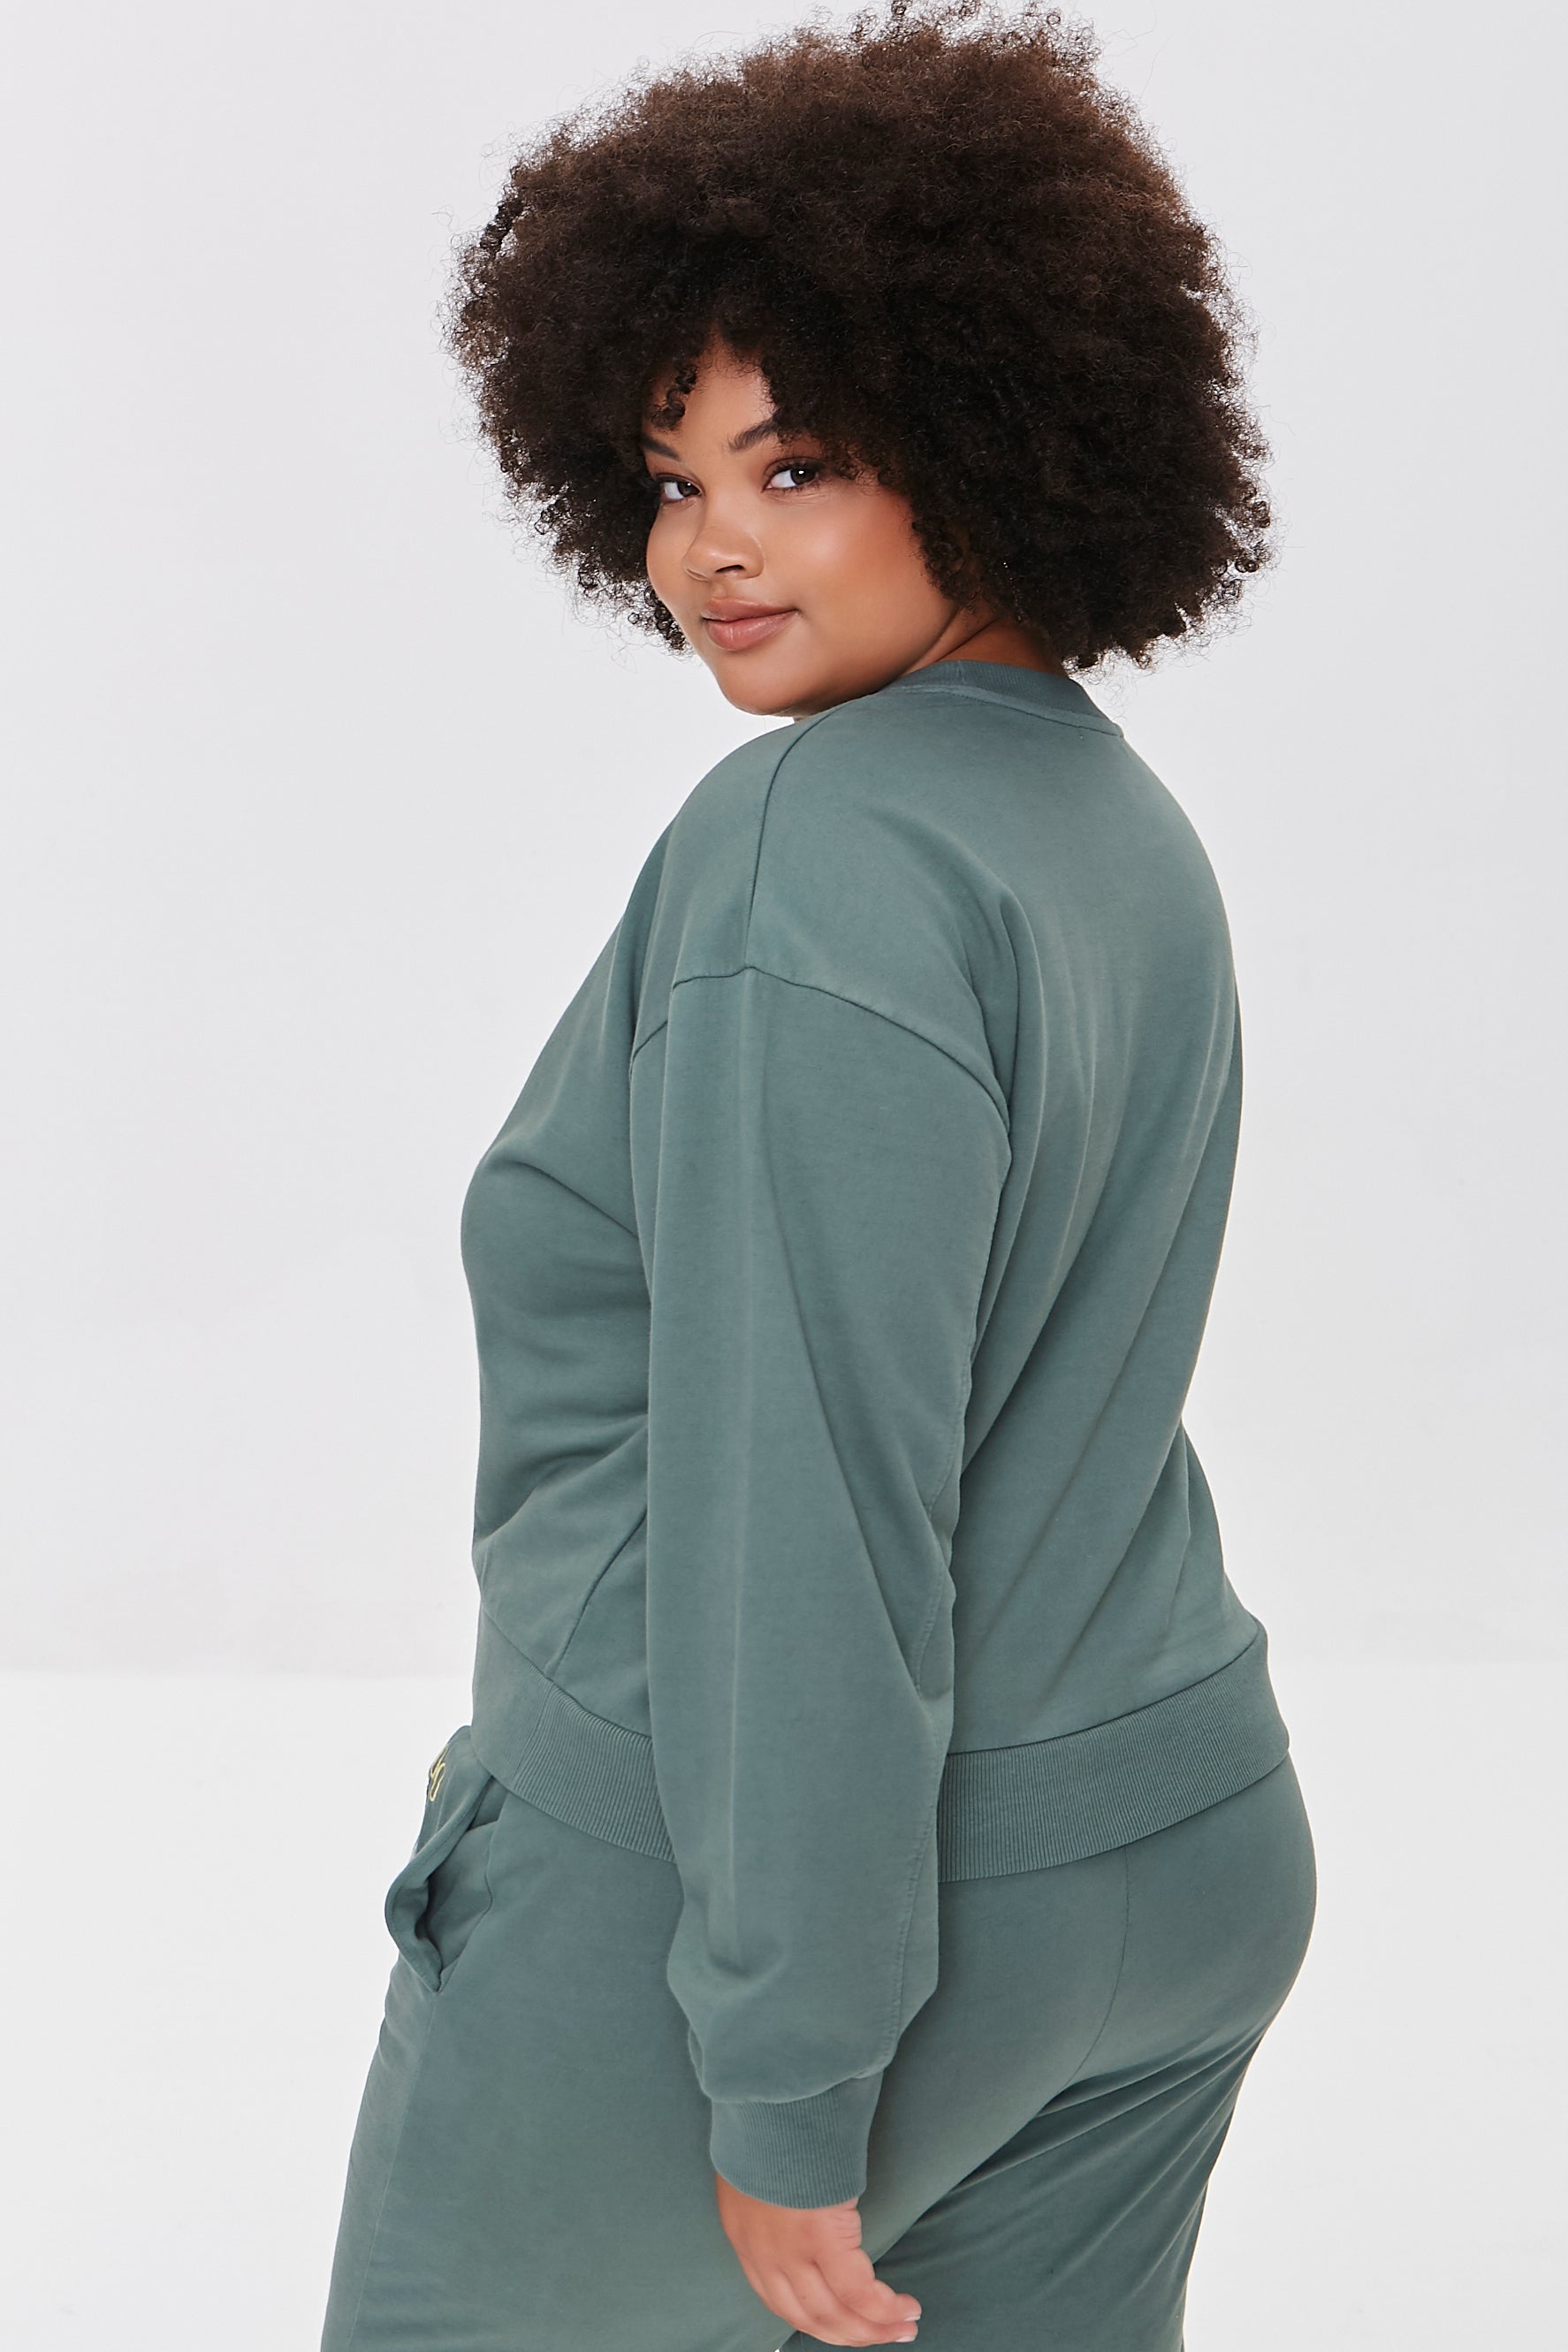 Green/multi Plus Size Embroidered Colorado Pullover 4